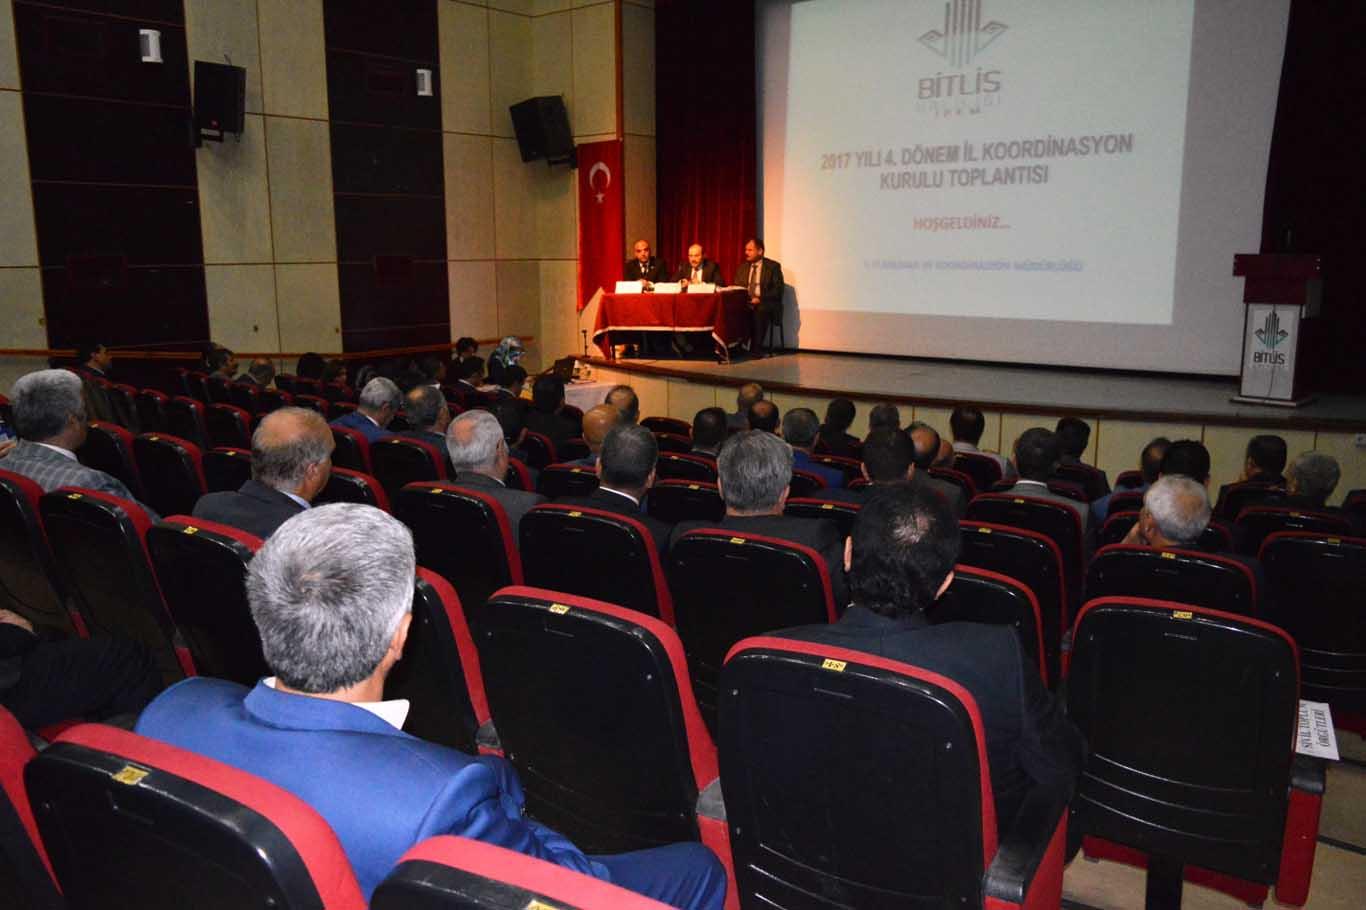 Bitlis’te 2017 yılının son koordinasyon toplantısı yapıldı